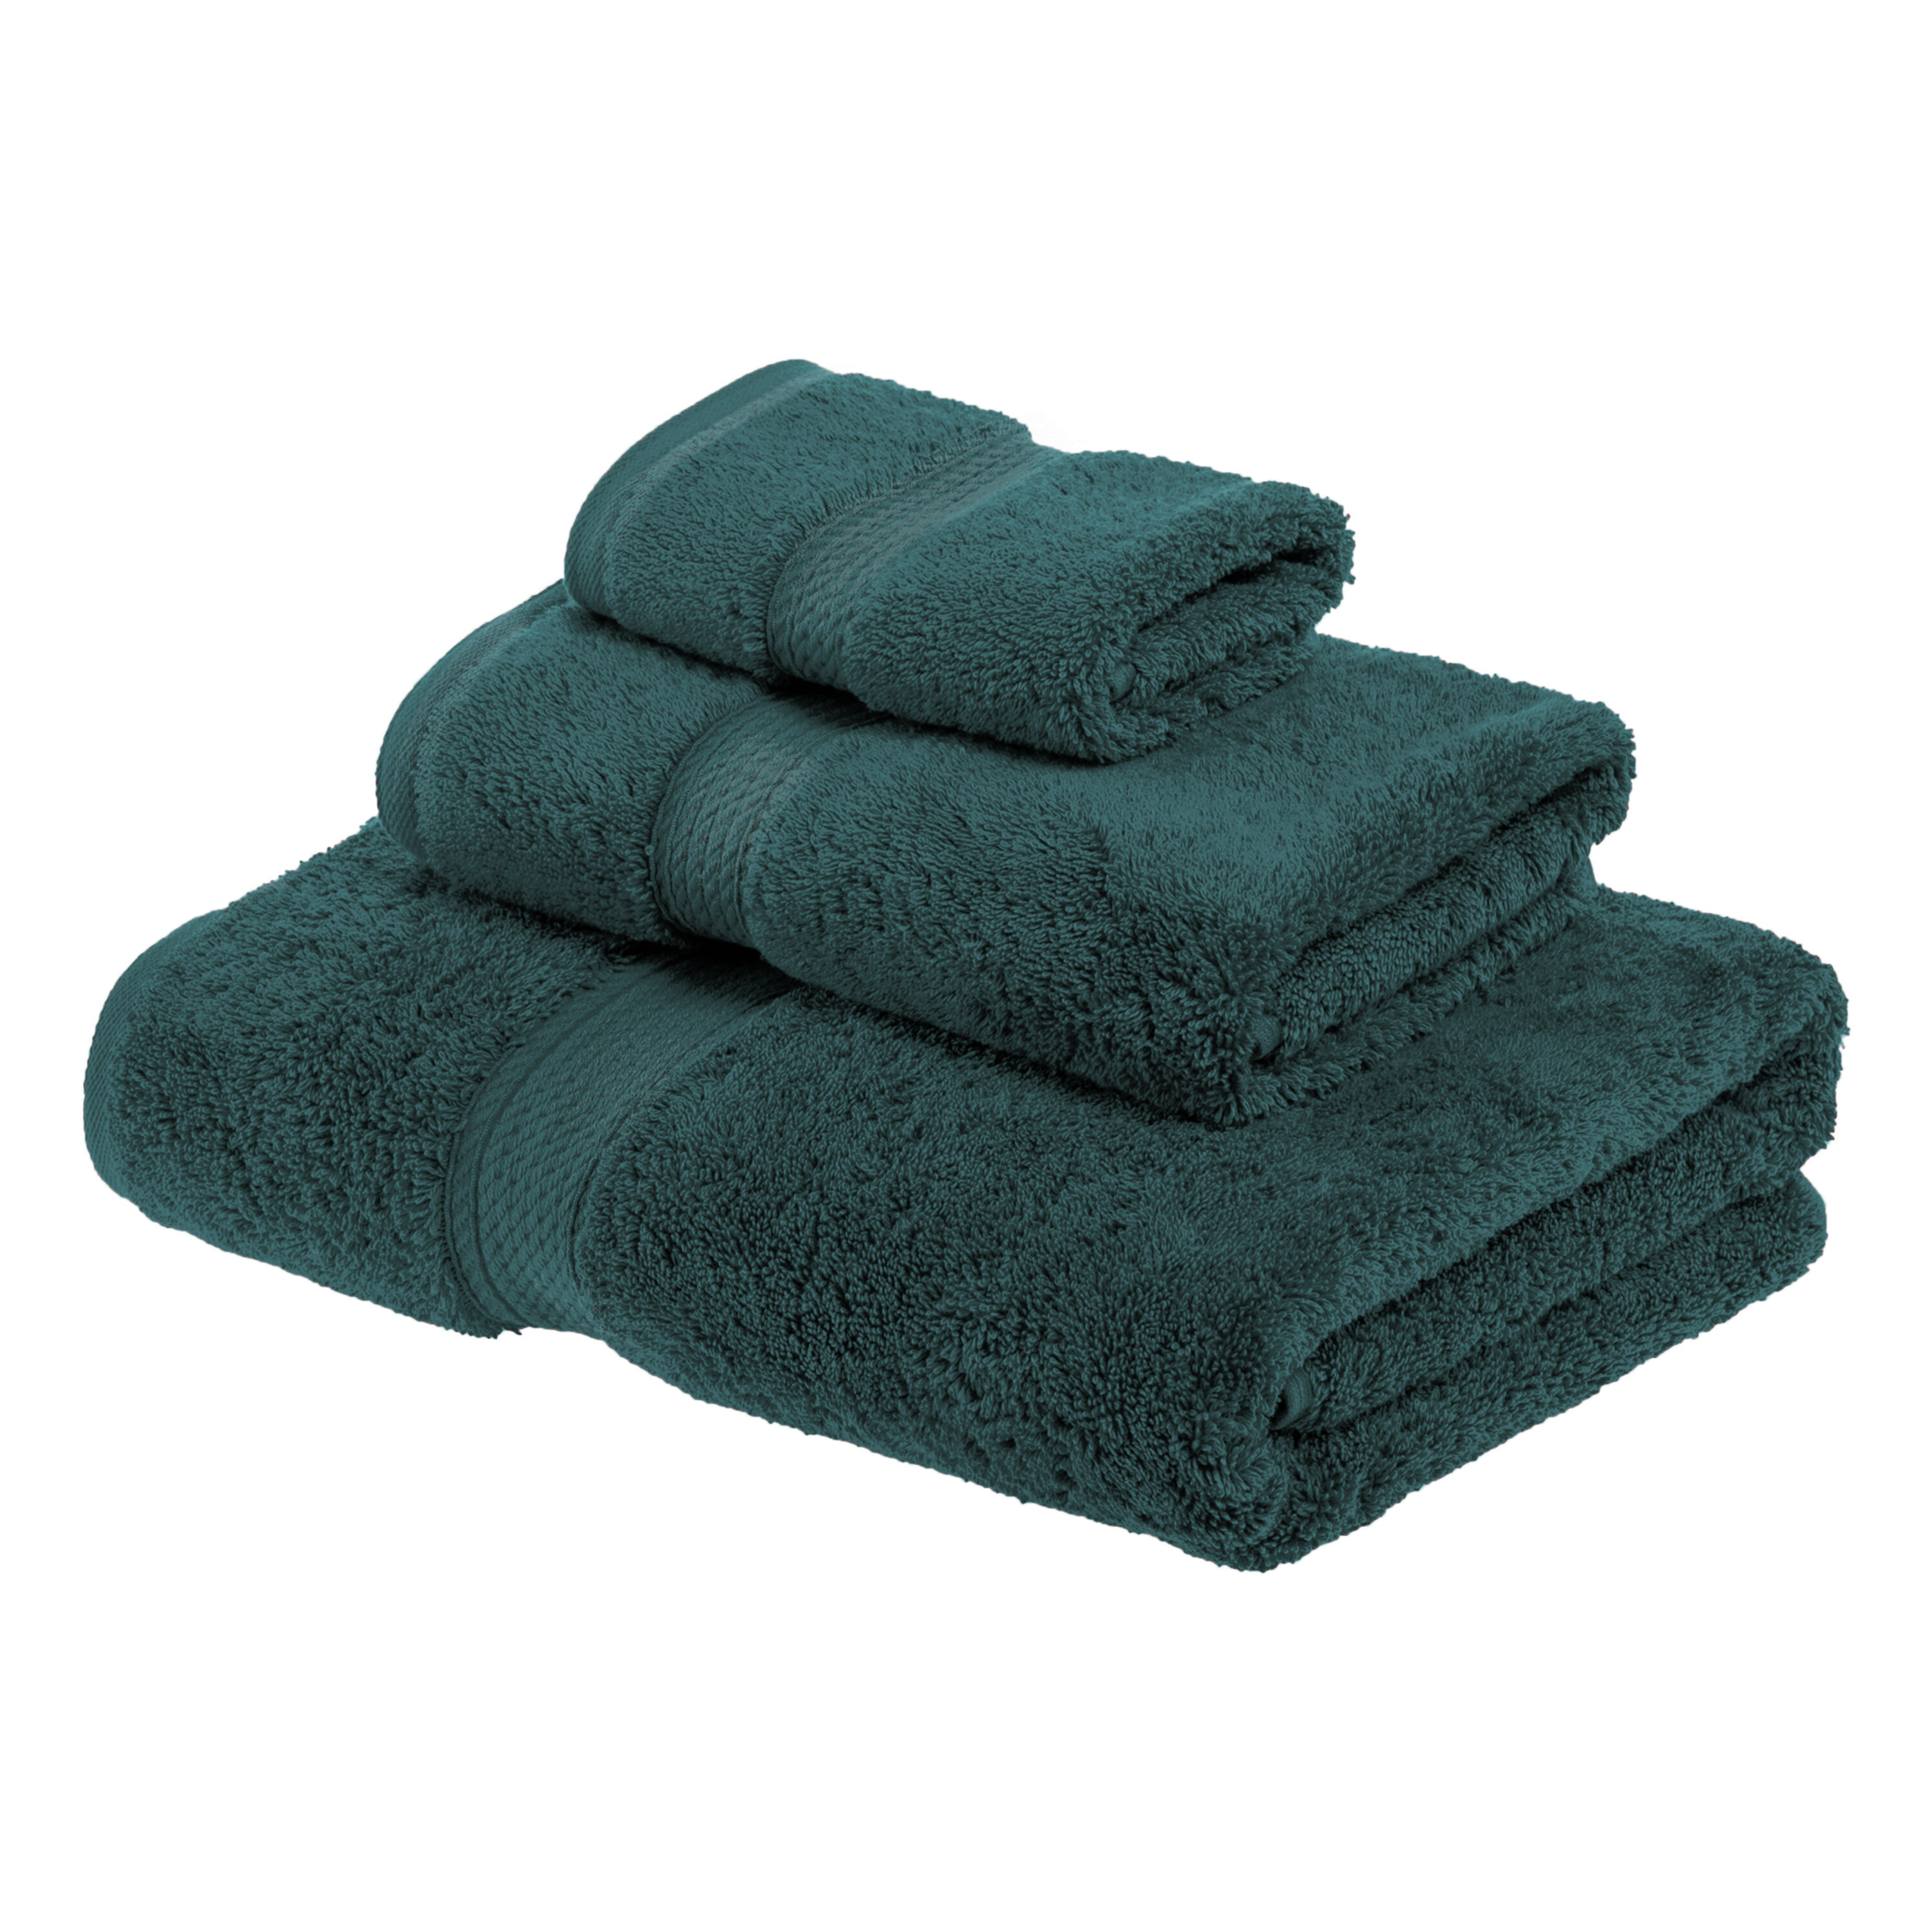 https://assets.wfcdn.com/im/73326958/compr-r85/1750/175004359/huson-3-piece-900-gsm-100-egyptian-cotton-towel-set.jpg